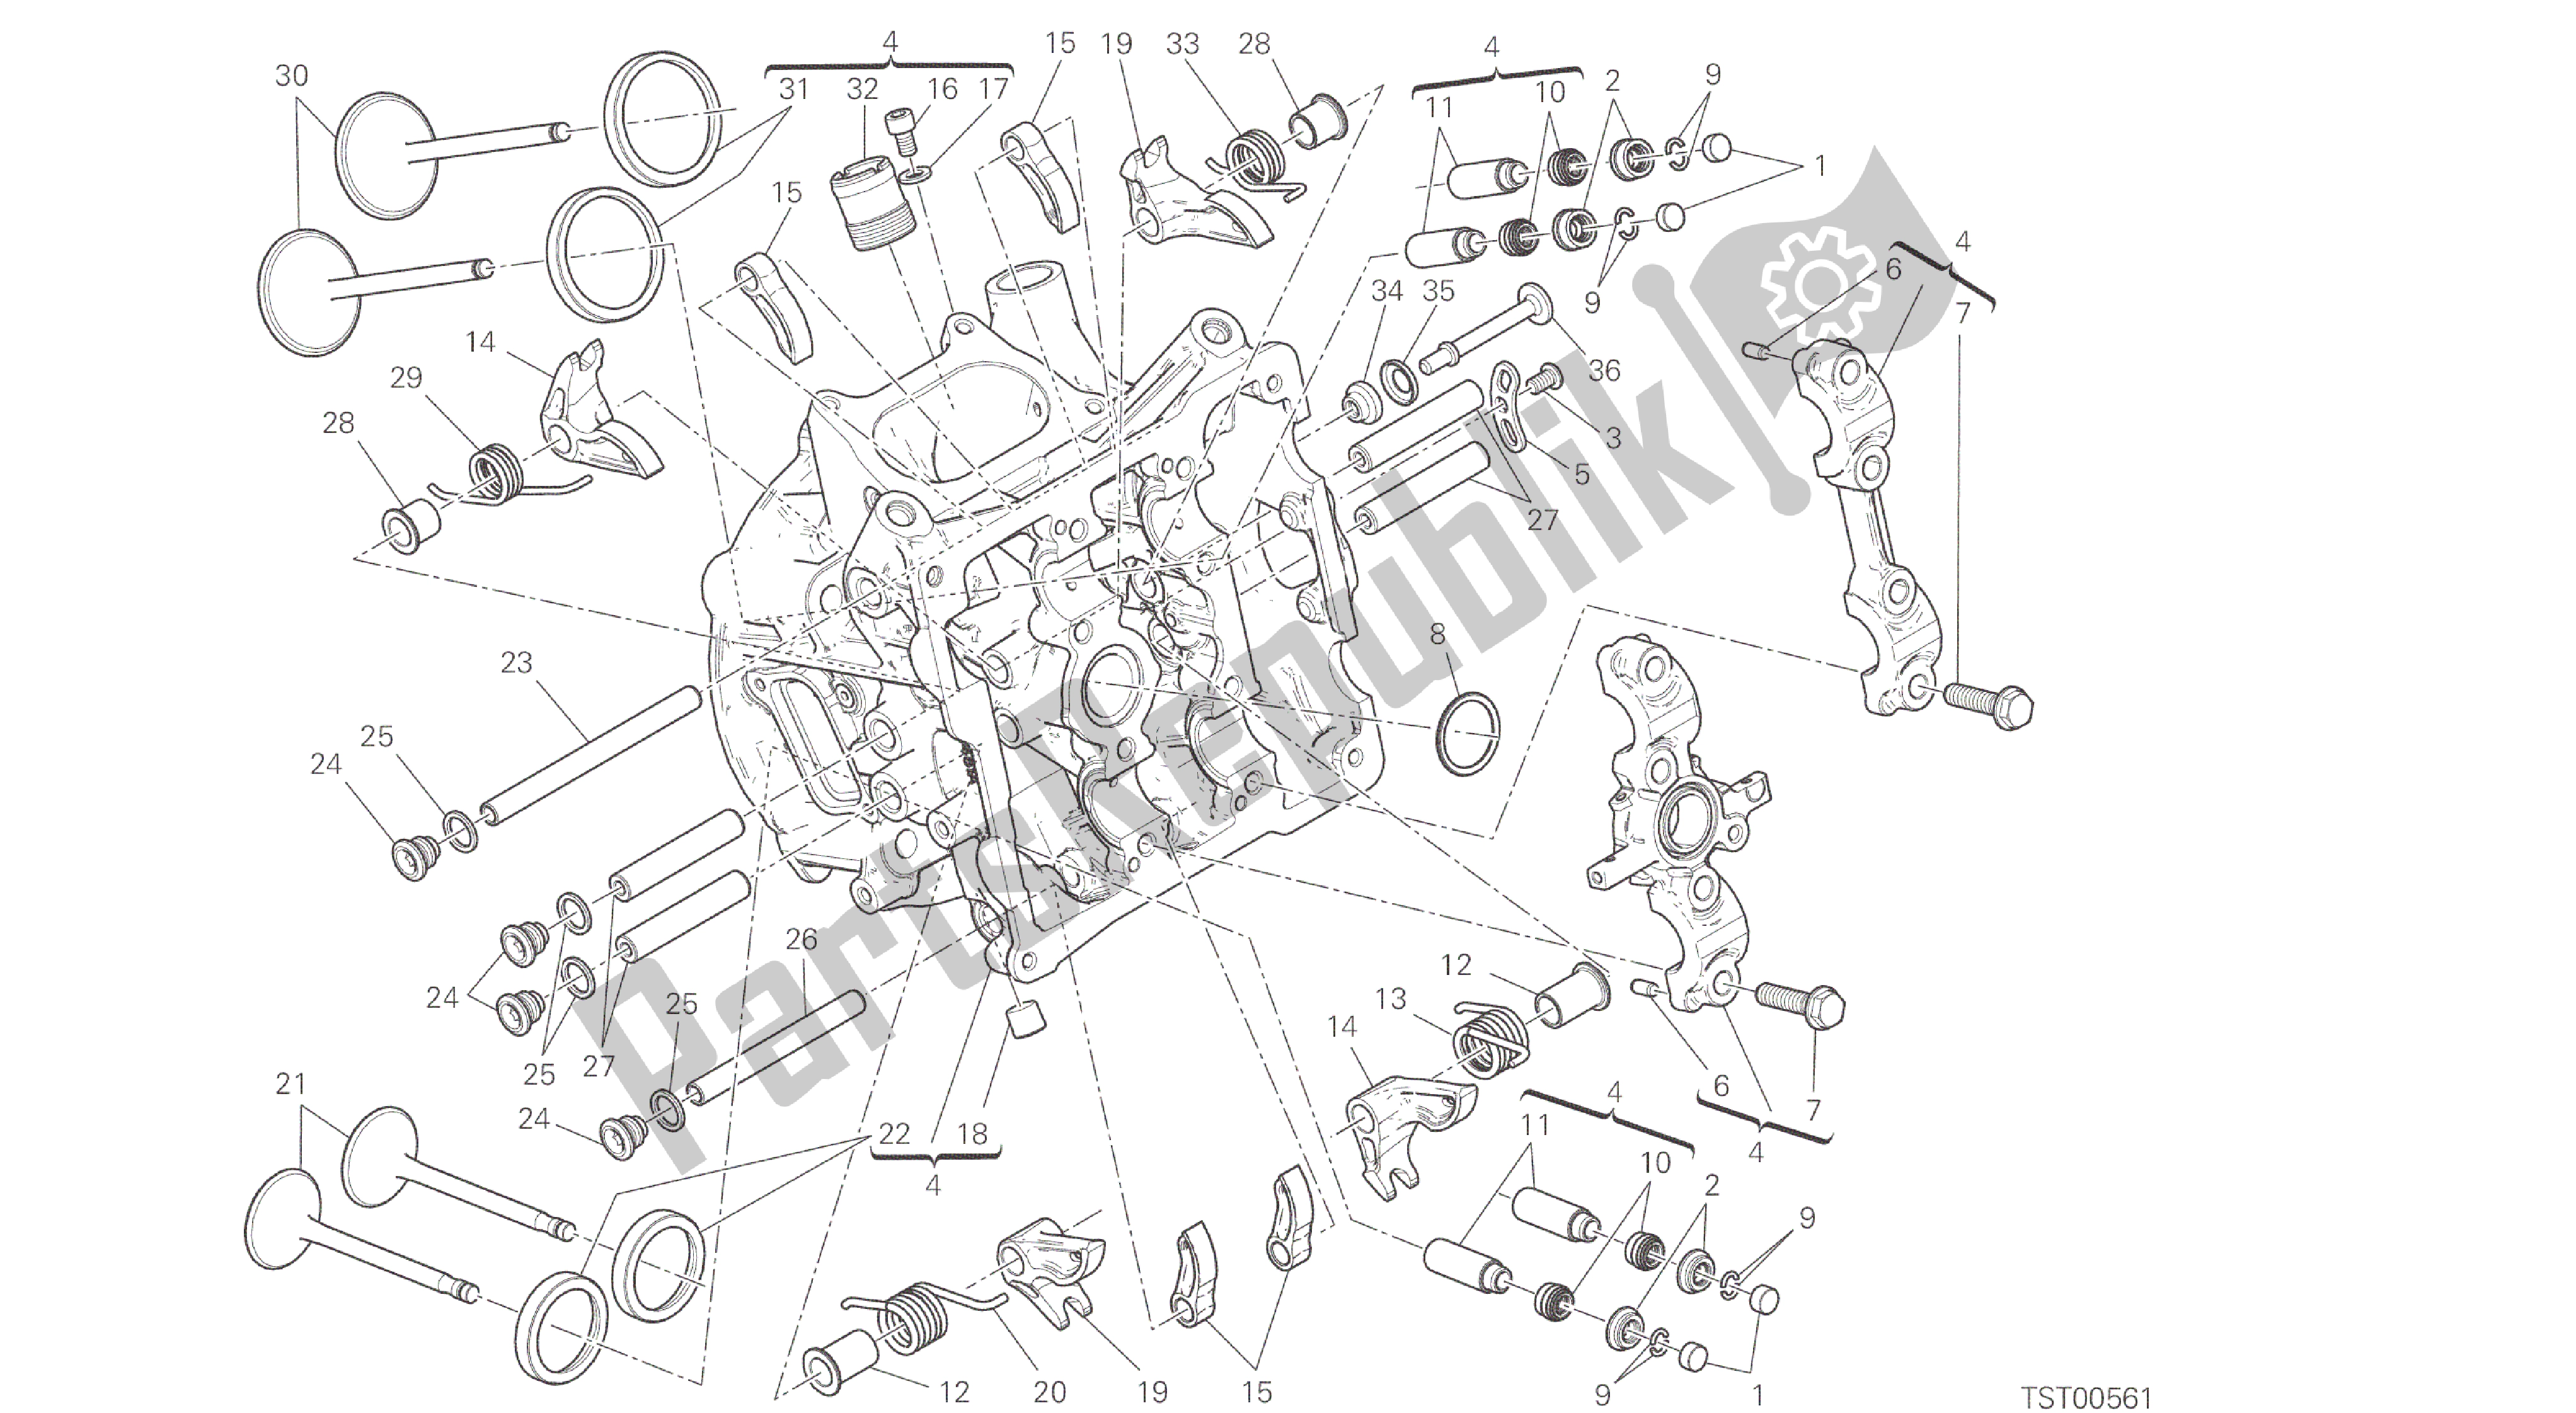 Alle onderdelen voor de Tekening 014 - Horizontale Kop [mod: 959,959 Aws] Groepsmotor van de Ducati Panigale 959 2016